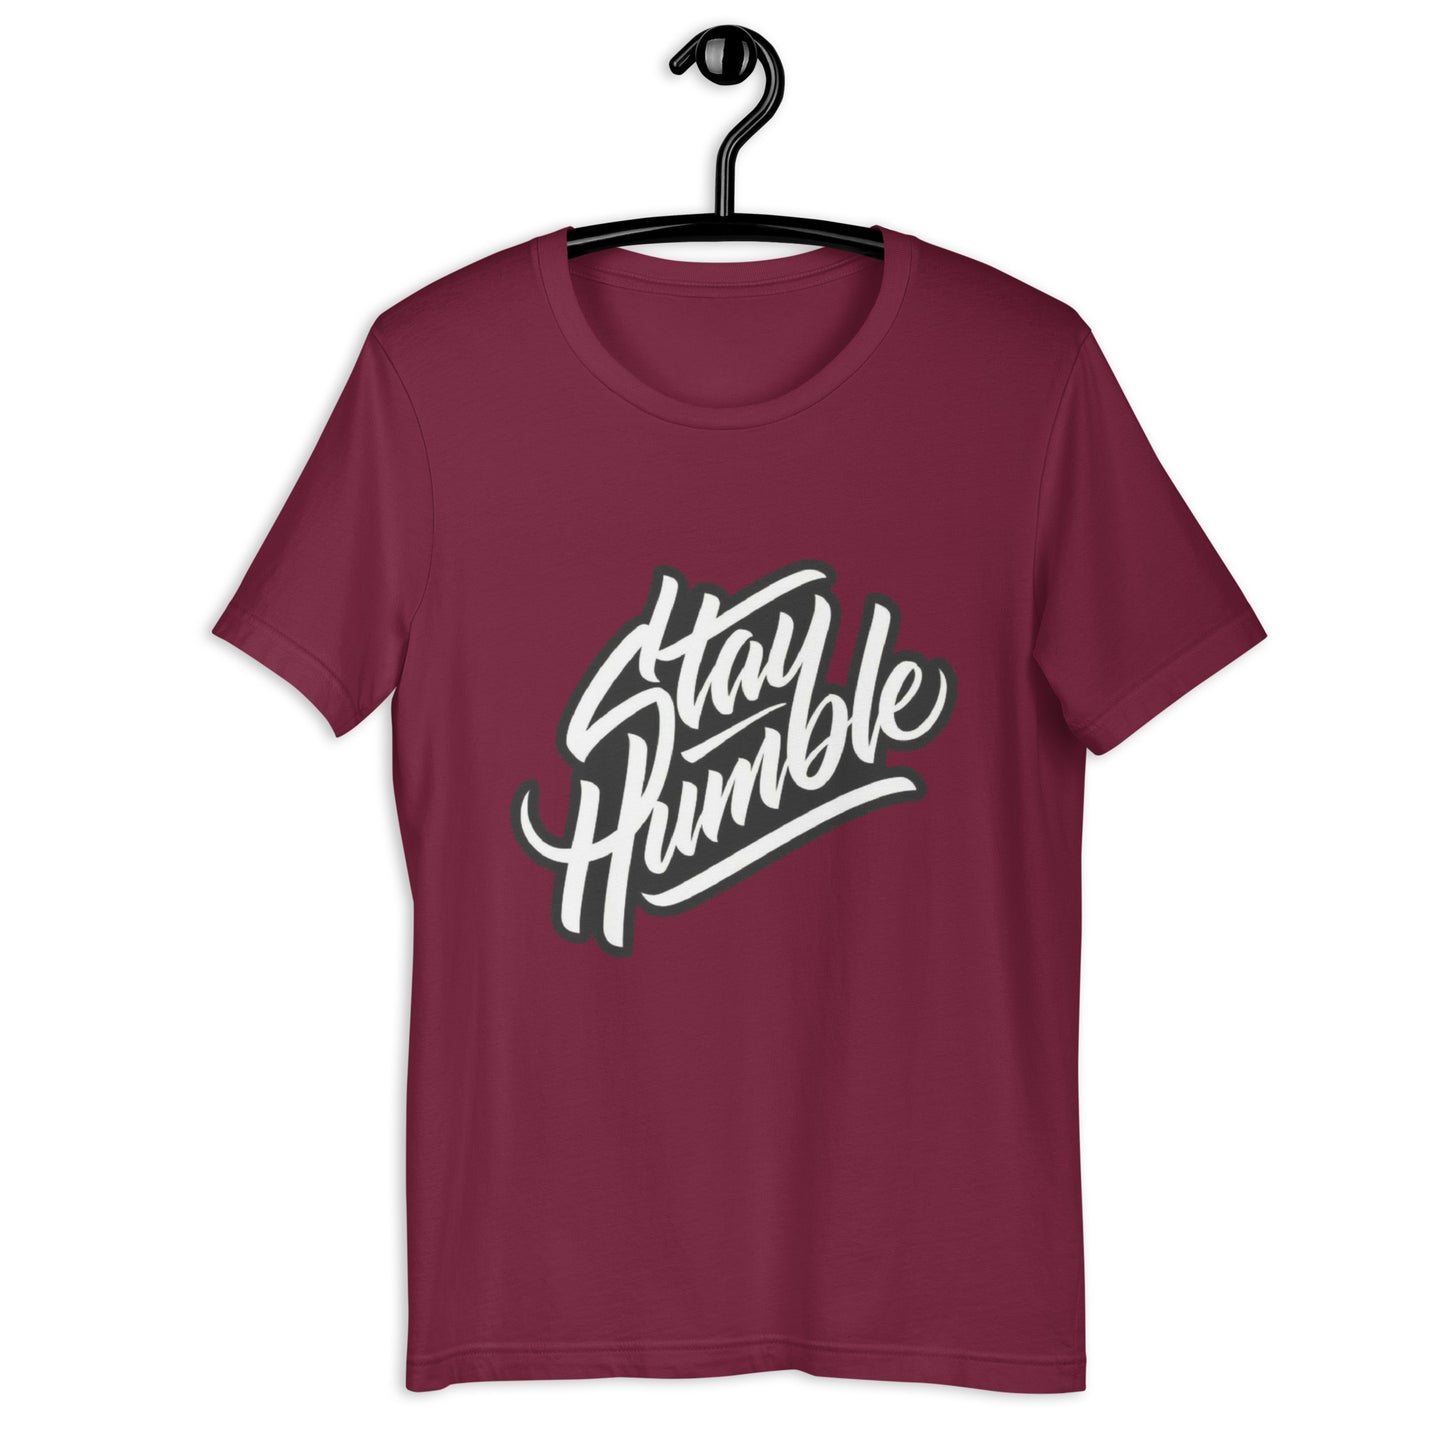 Stay Humble- Tee